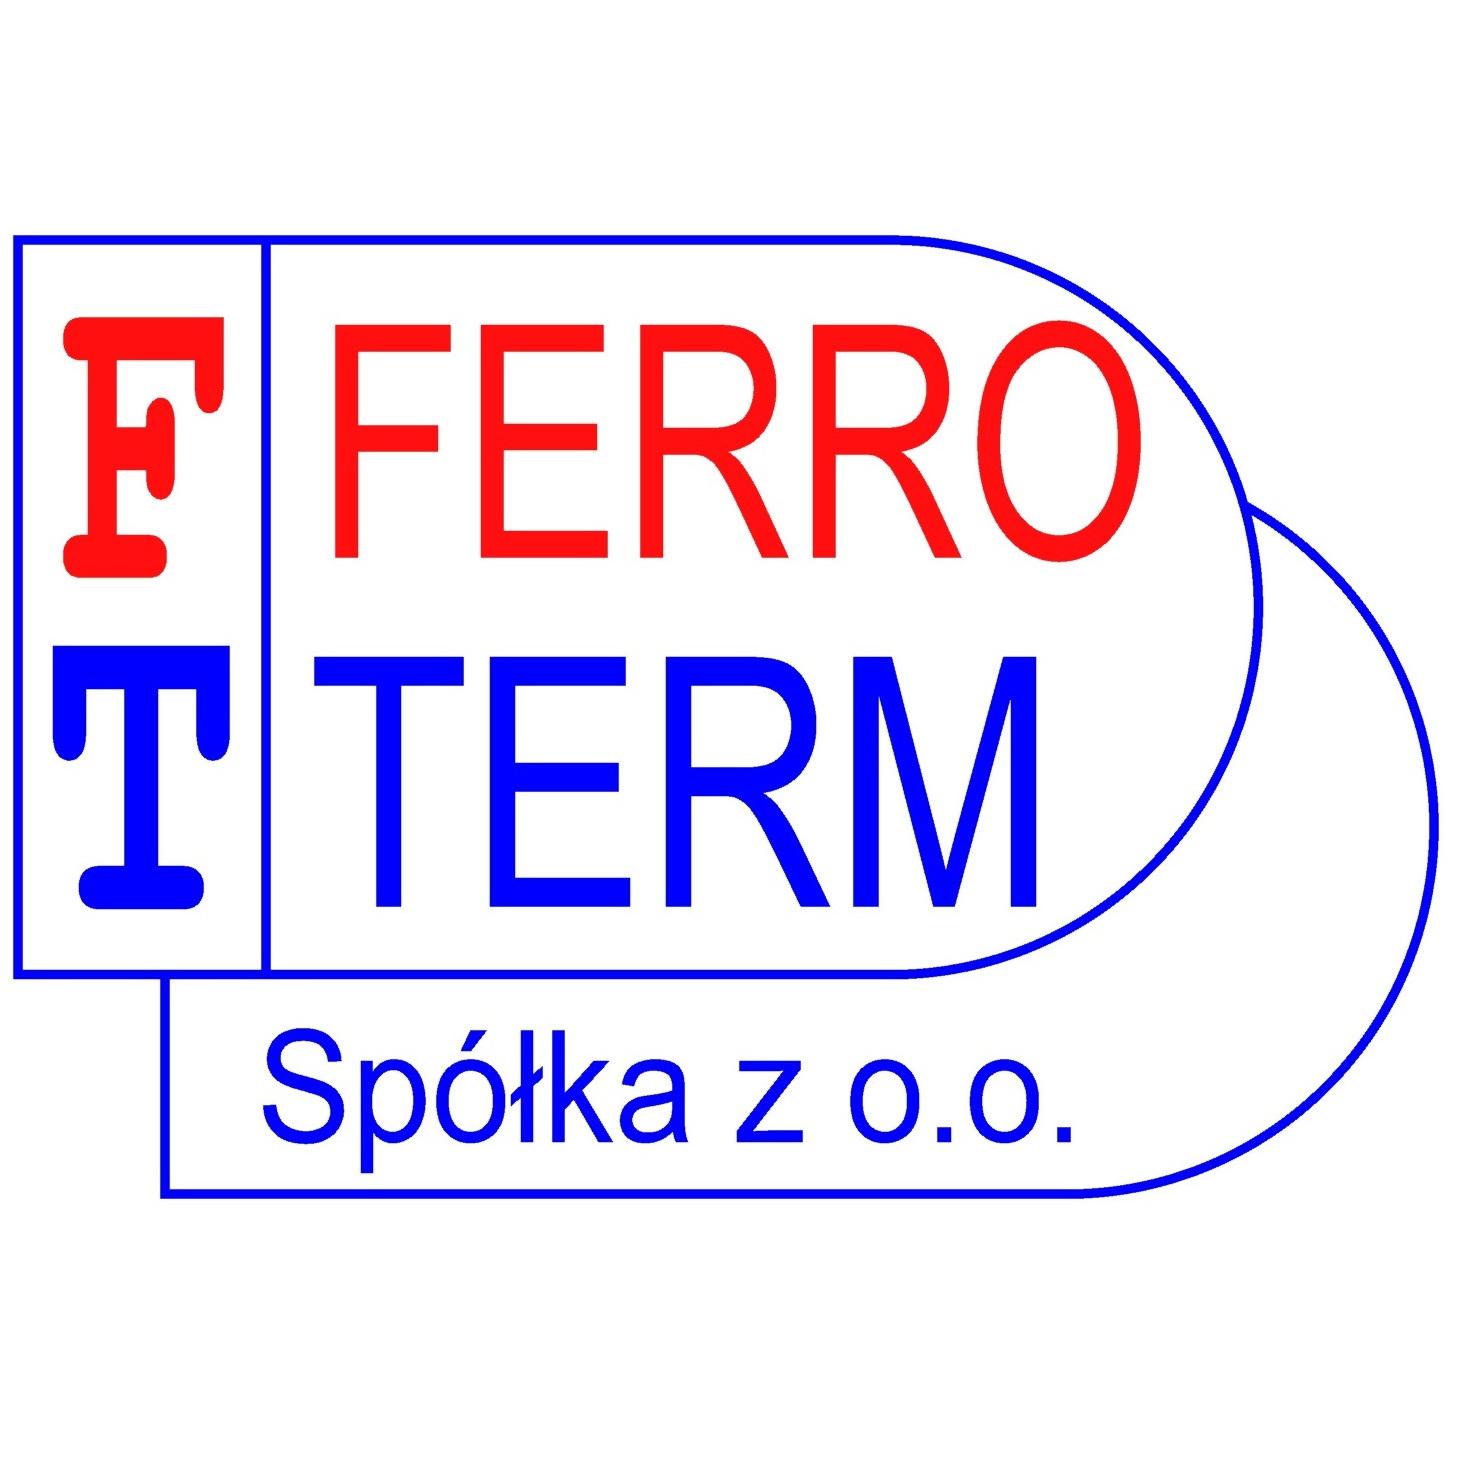 FERRO - TERM Sp. z o.o.